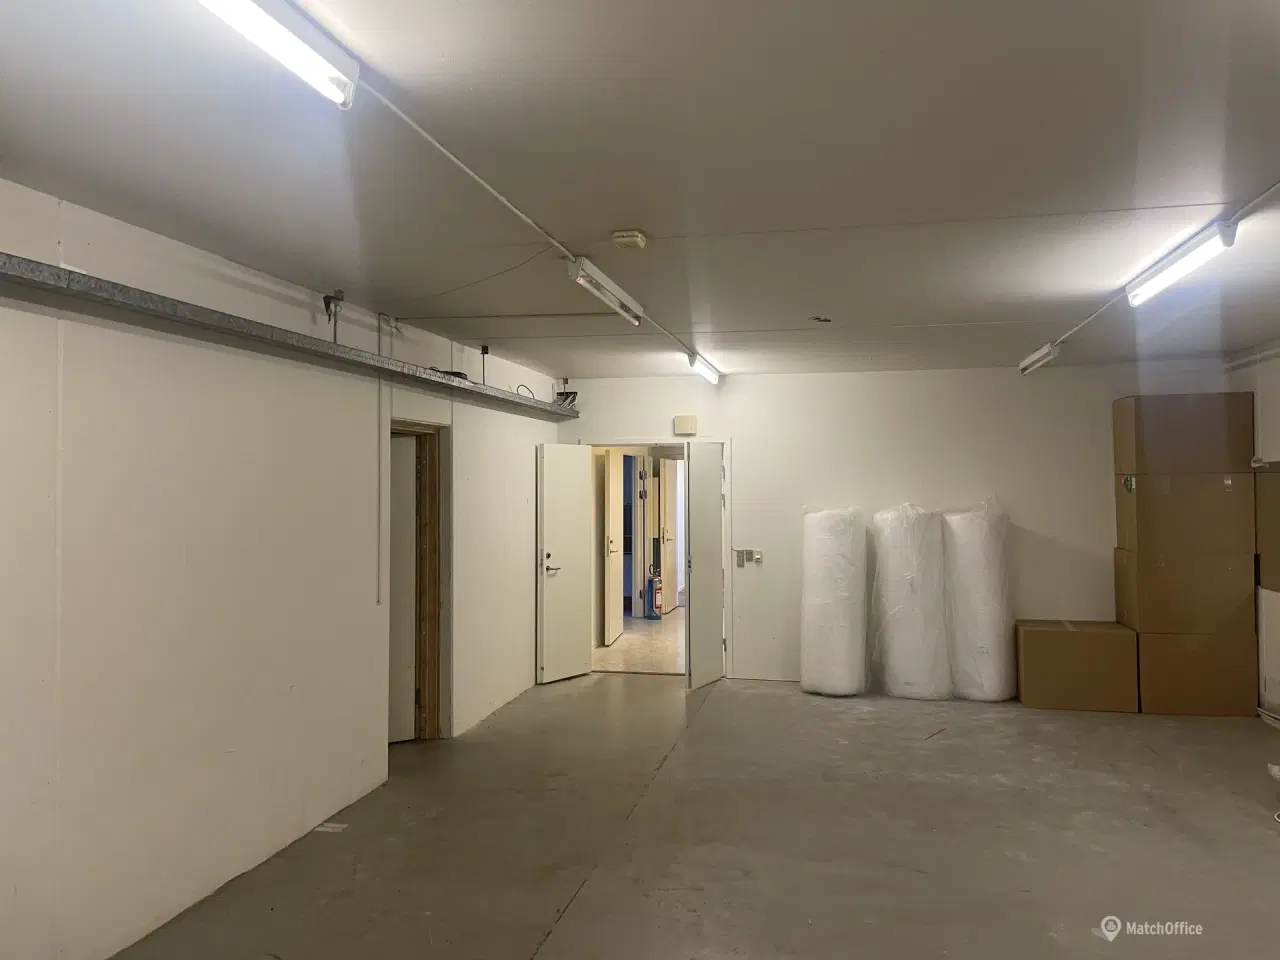 Billede 6 - Ledige lager/depot lejemål fra 16- 98 m²